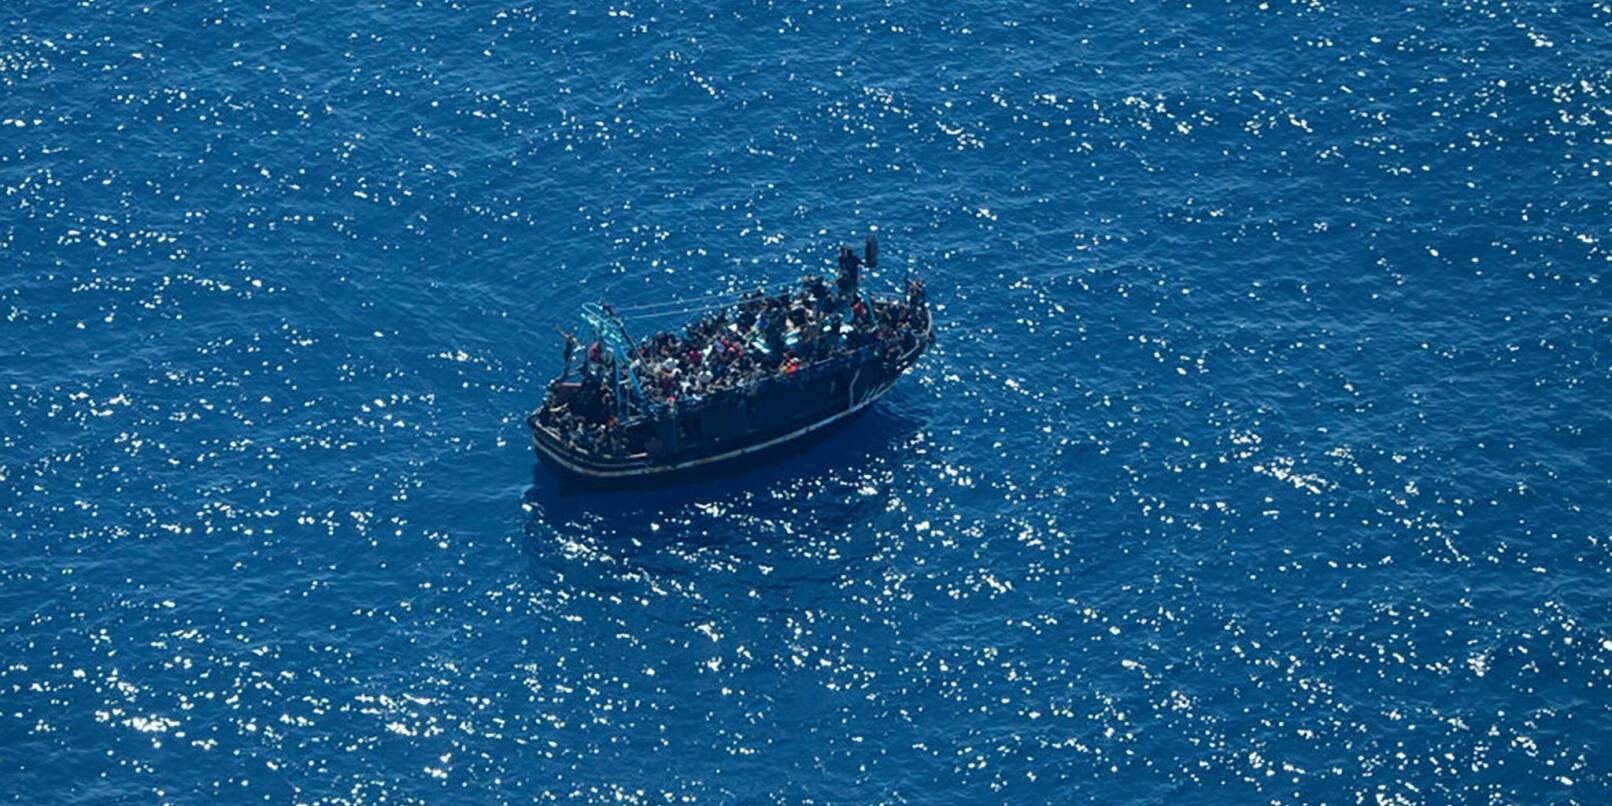 Viele Migranten wagen die Überfahrt von Nordafrika nach Europa auf seeuntauglichen Booten.